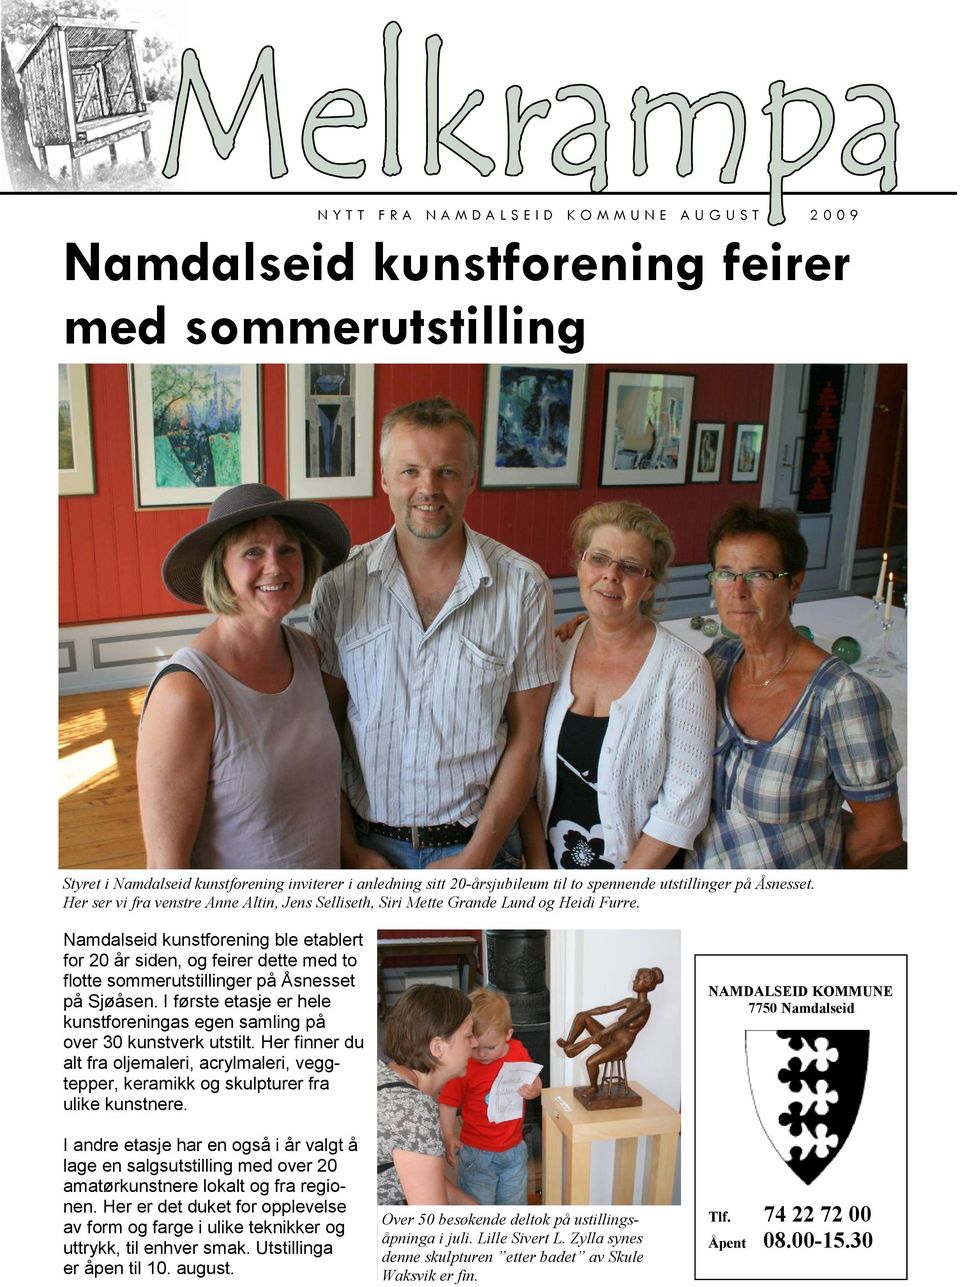 Namdalseid kunstforening ble etablert for 20 år siden, og feirer dette med to flotte sommerutstillinger på Åsnesset på Sjøåsen.